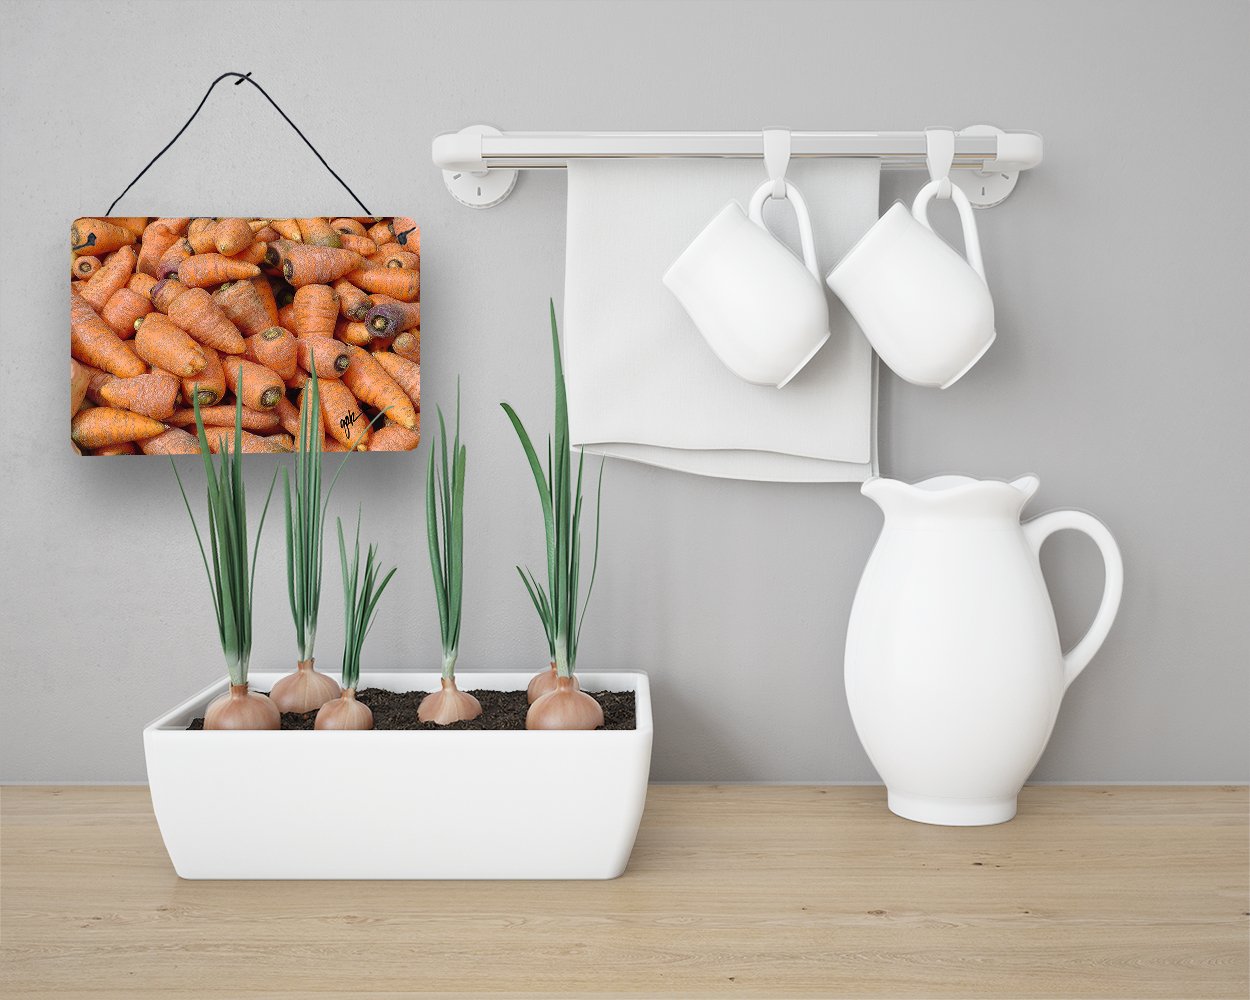 Buy this Carrots by Gary Kwiatek Wall or Door Hanging Prints